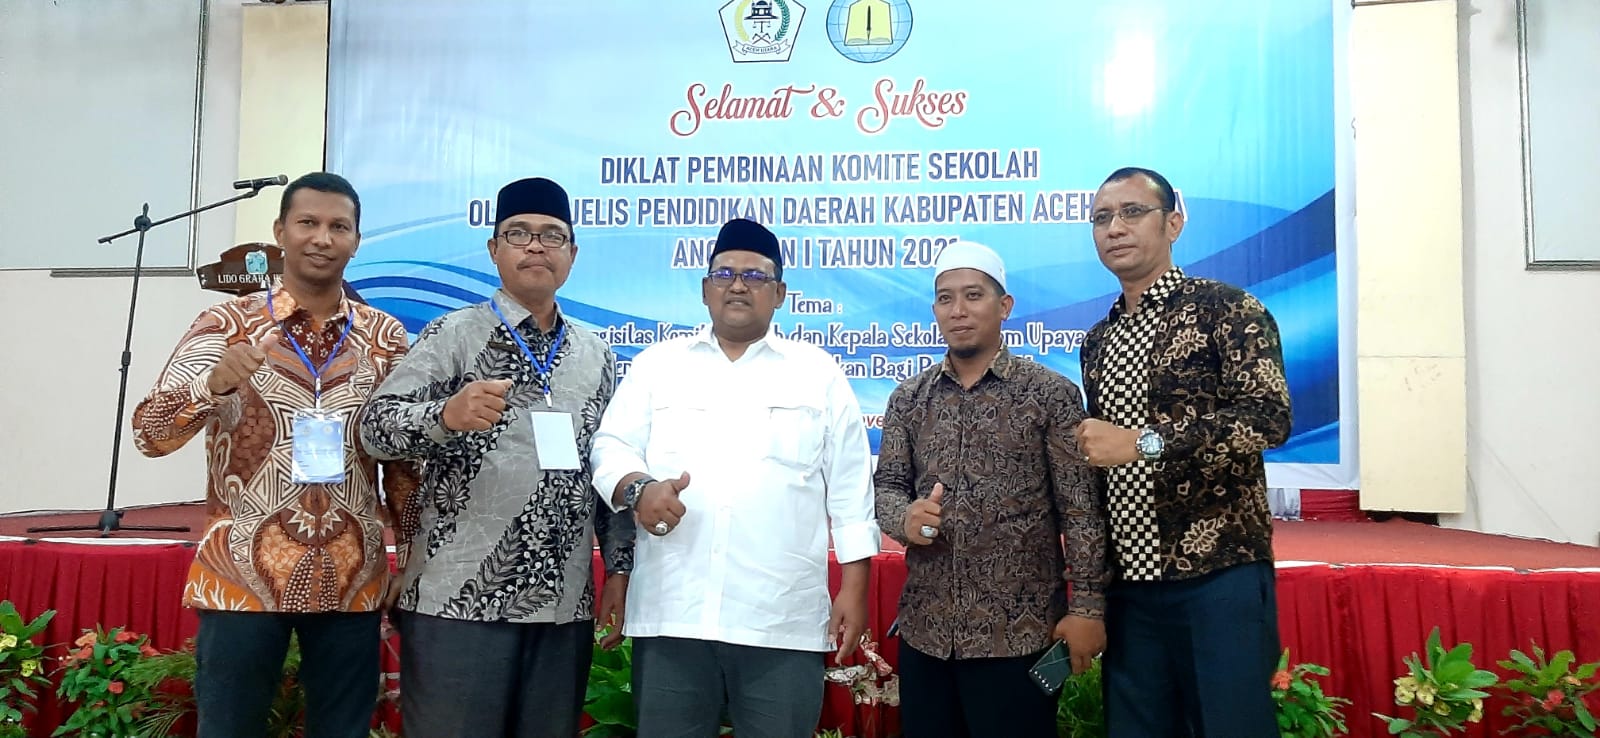 Kawasan Terpencil Harus Menjadi Prioritas Dalam Membangun Mutu Pendidikan di Aceh Utara